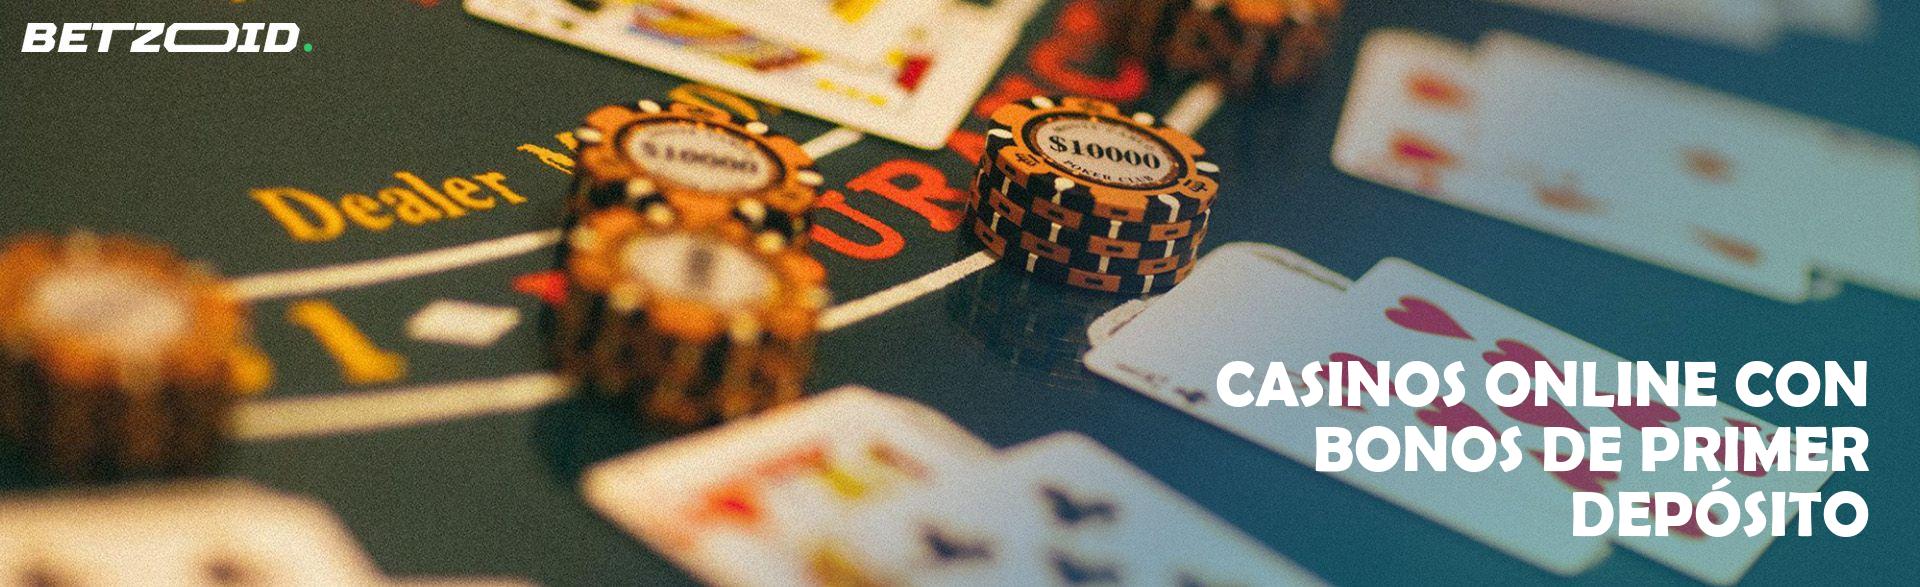 Casinos Online con Bonos de Primer Depósito.